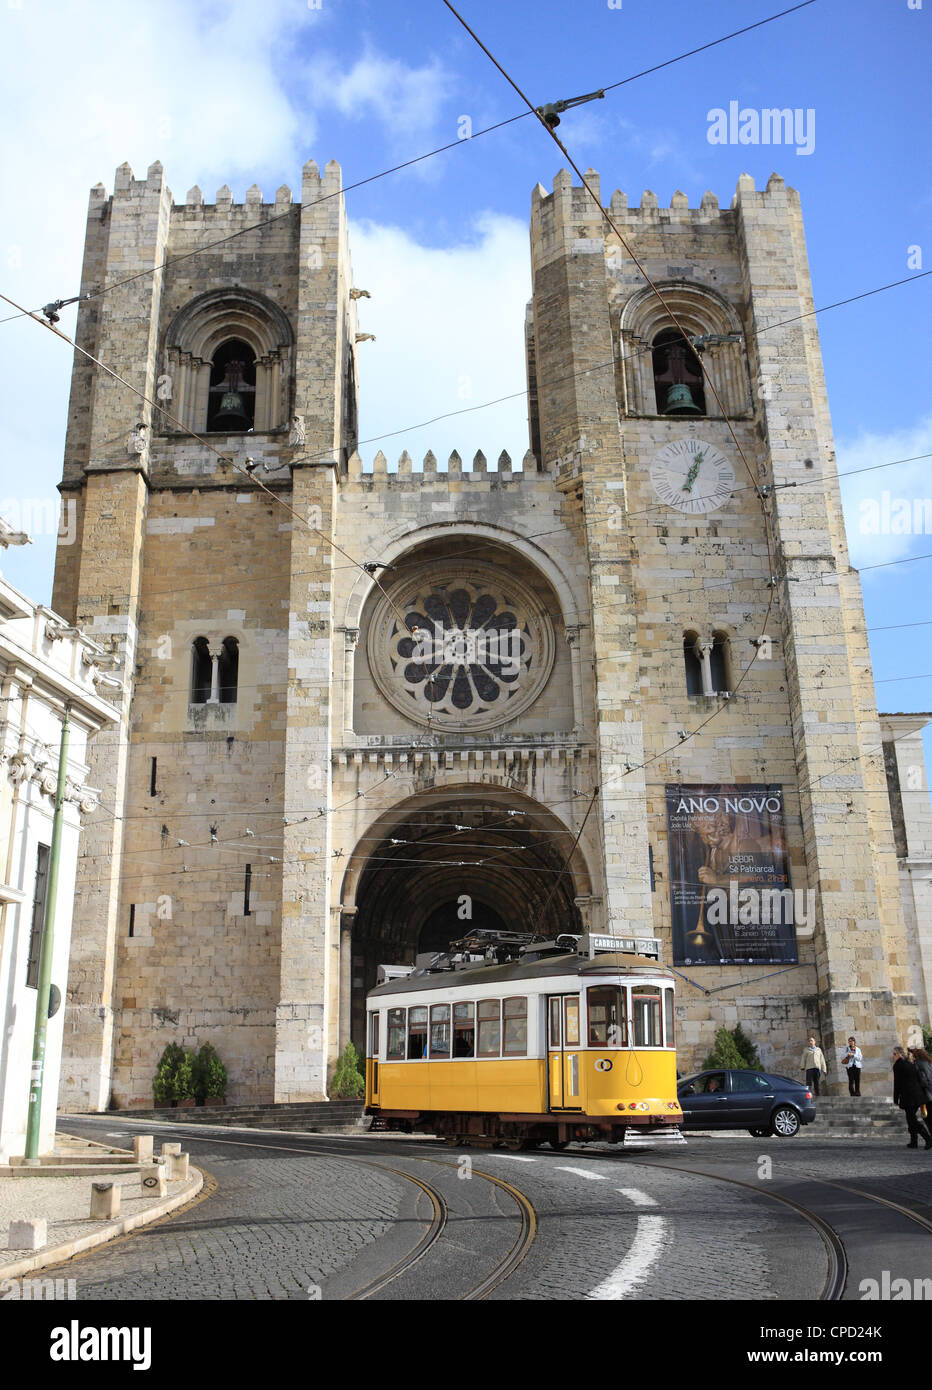 Le Tram et Se (cathédrale), Alfama, Lisbonne, Portugal, Europe Banque D'Images